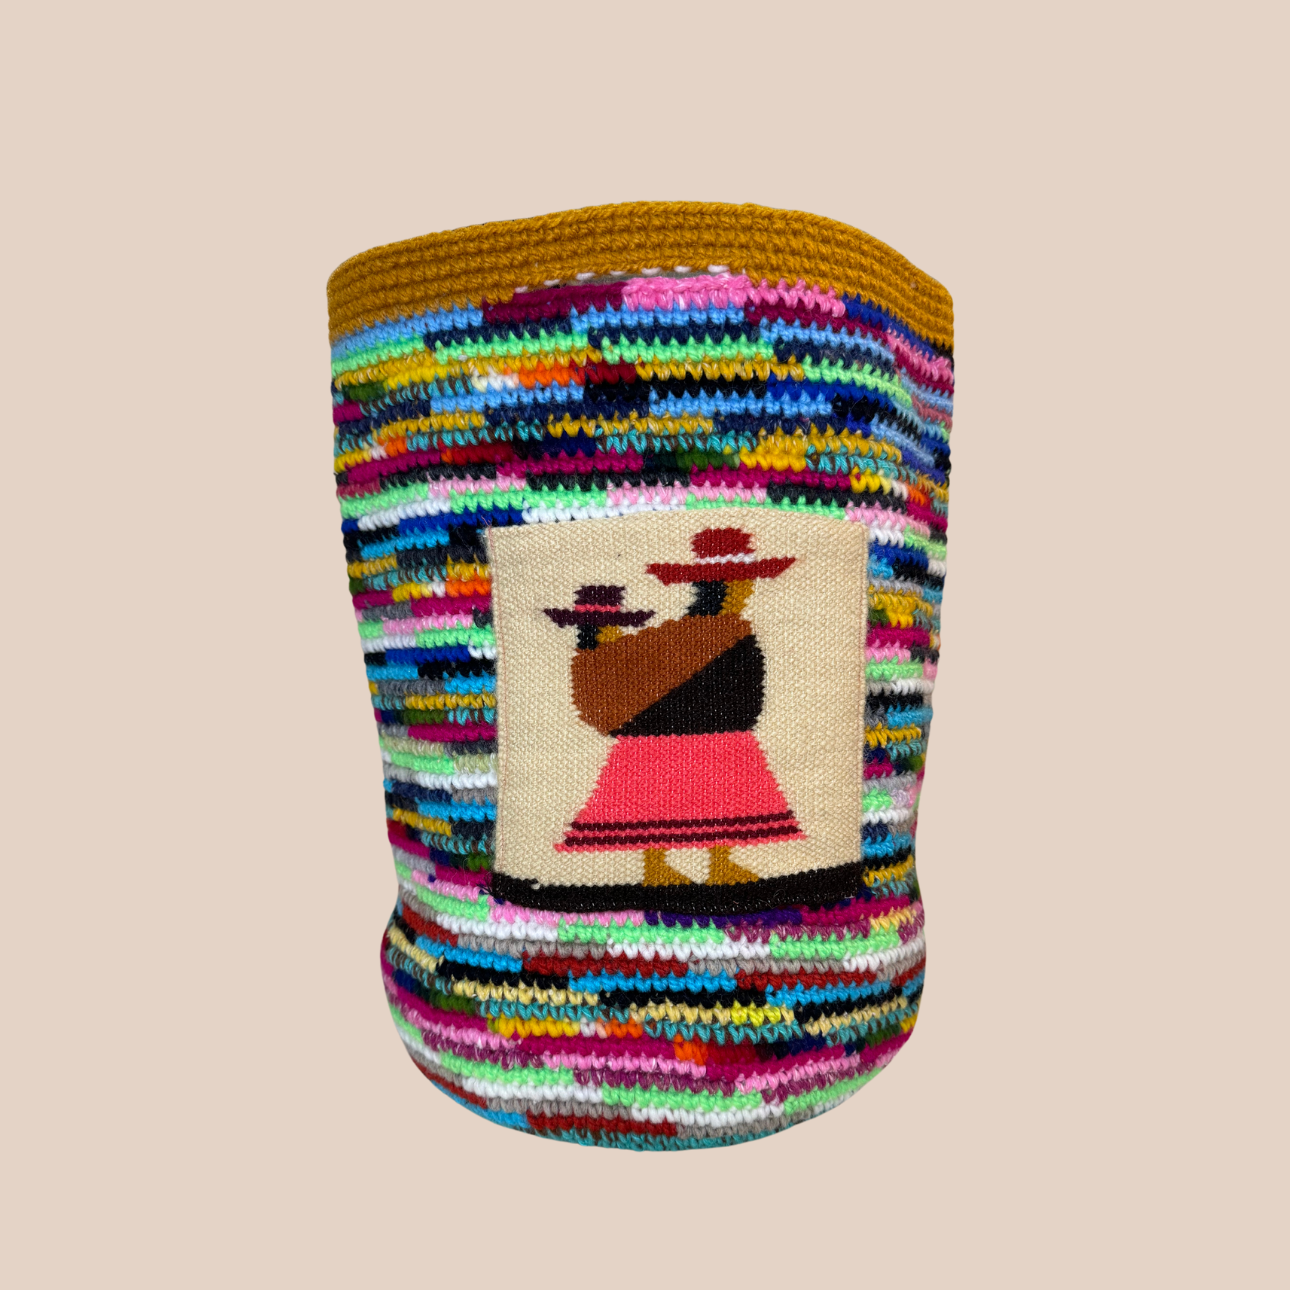 Image du sac aux motifs poupées de Maison Badigo, sac XXL en laine crochetée arborant des couleurs vives et audacieuses